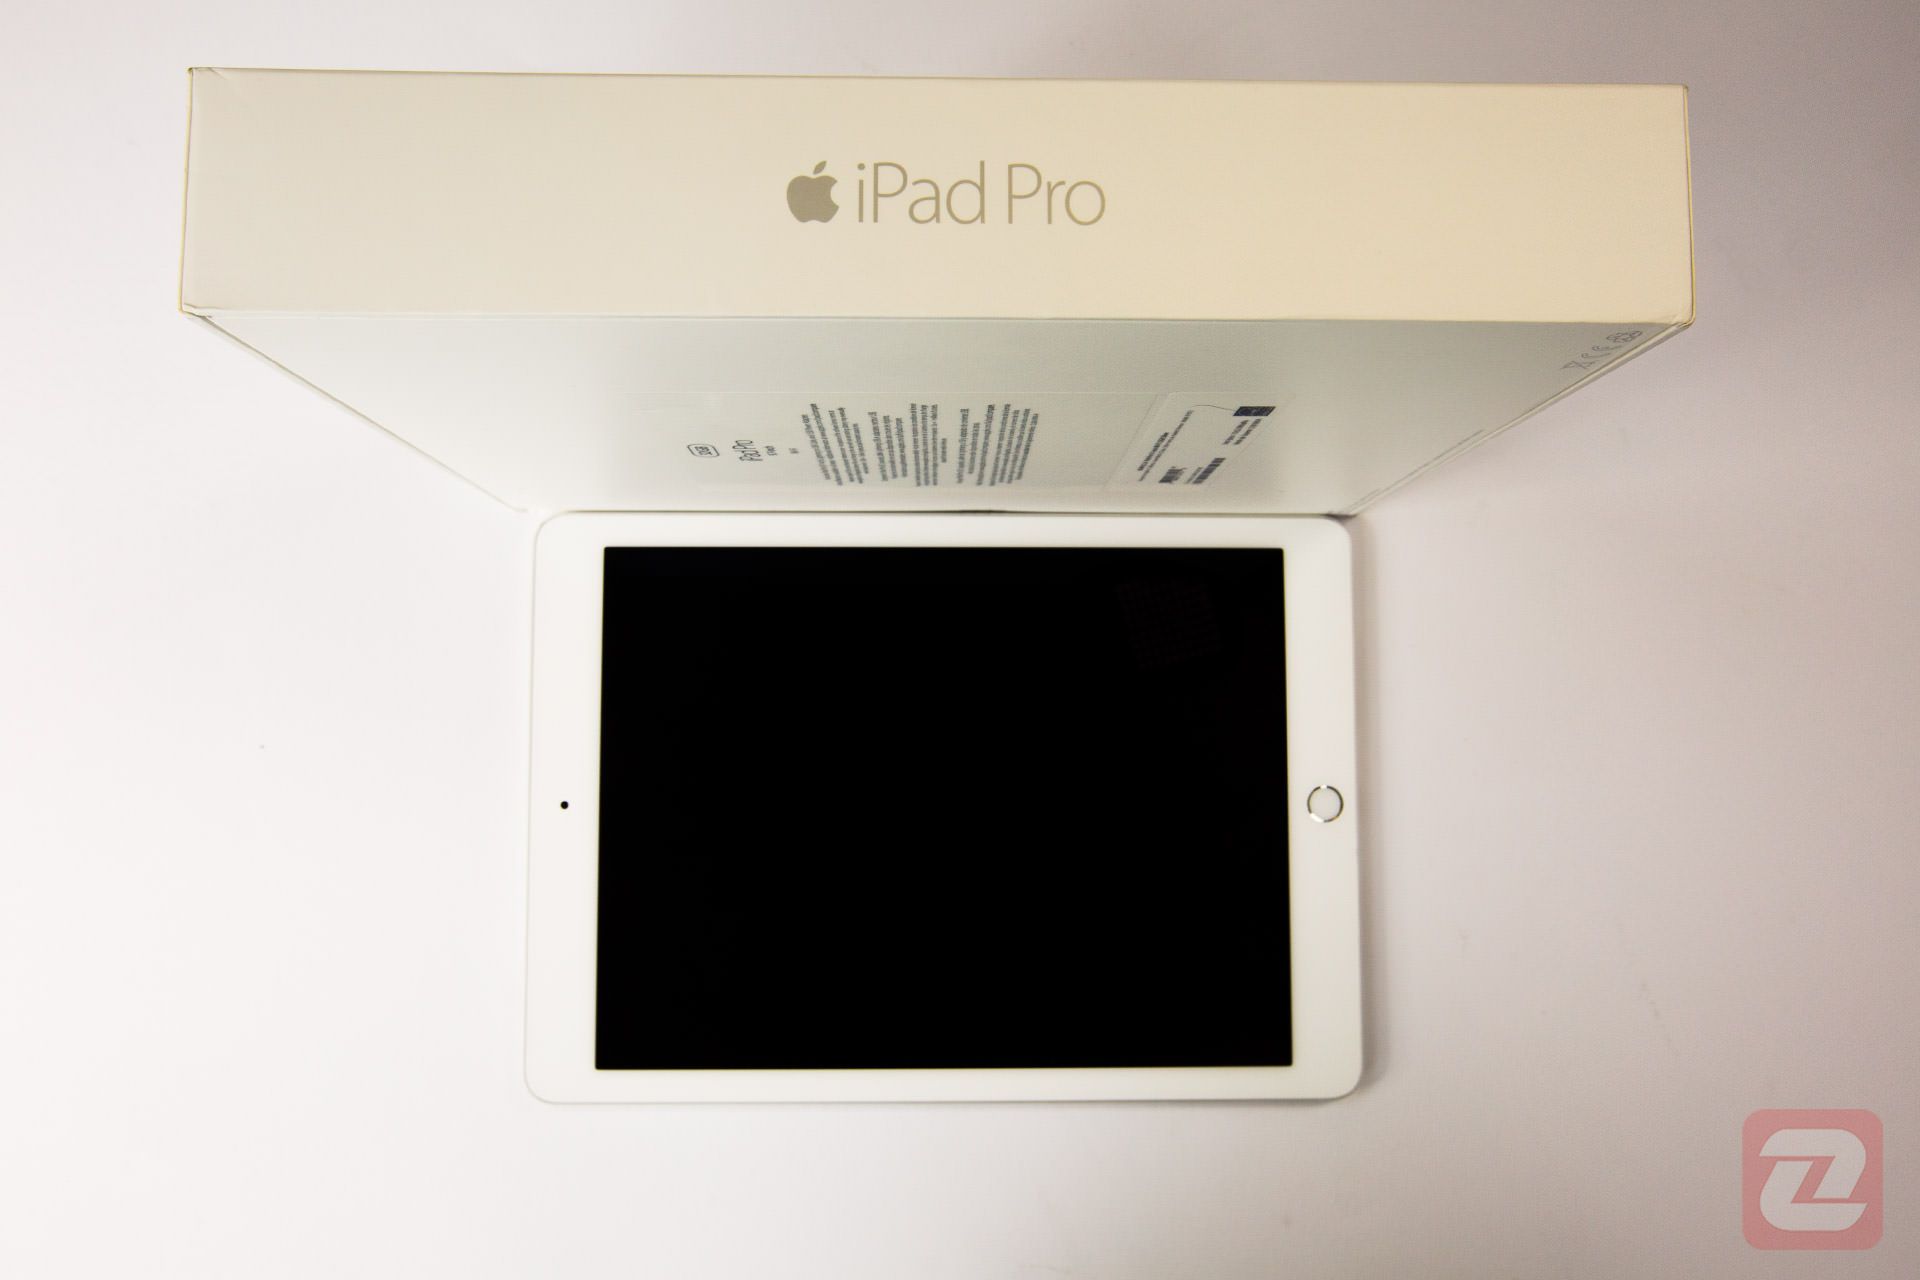 مرجع متخصصين ايران آيپد پرو ۹.۷ / iPad Pro 9.7